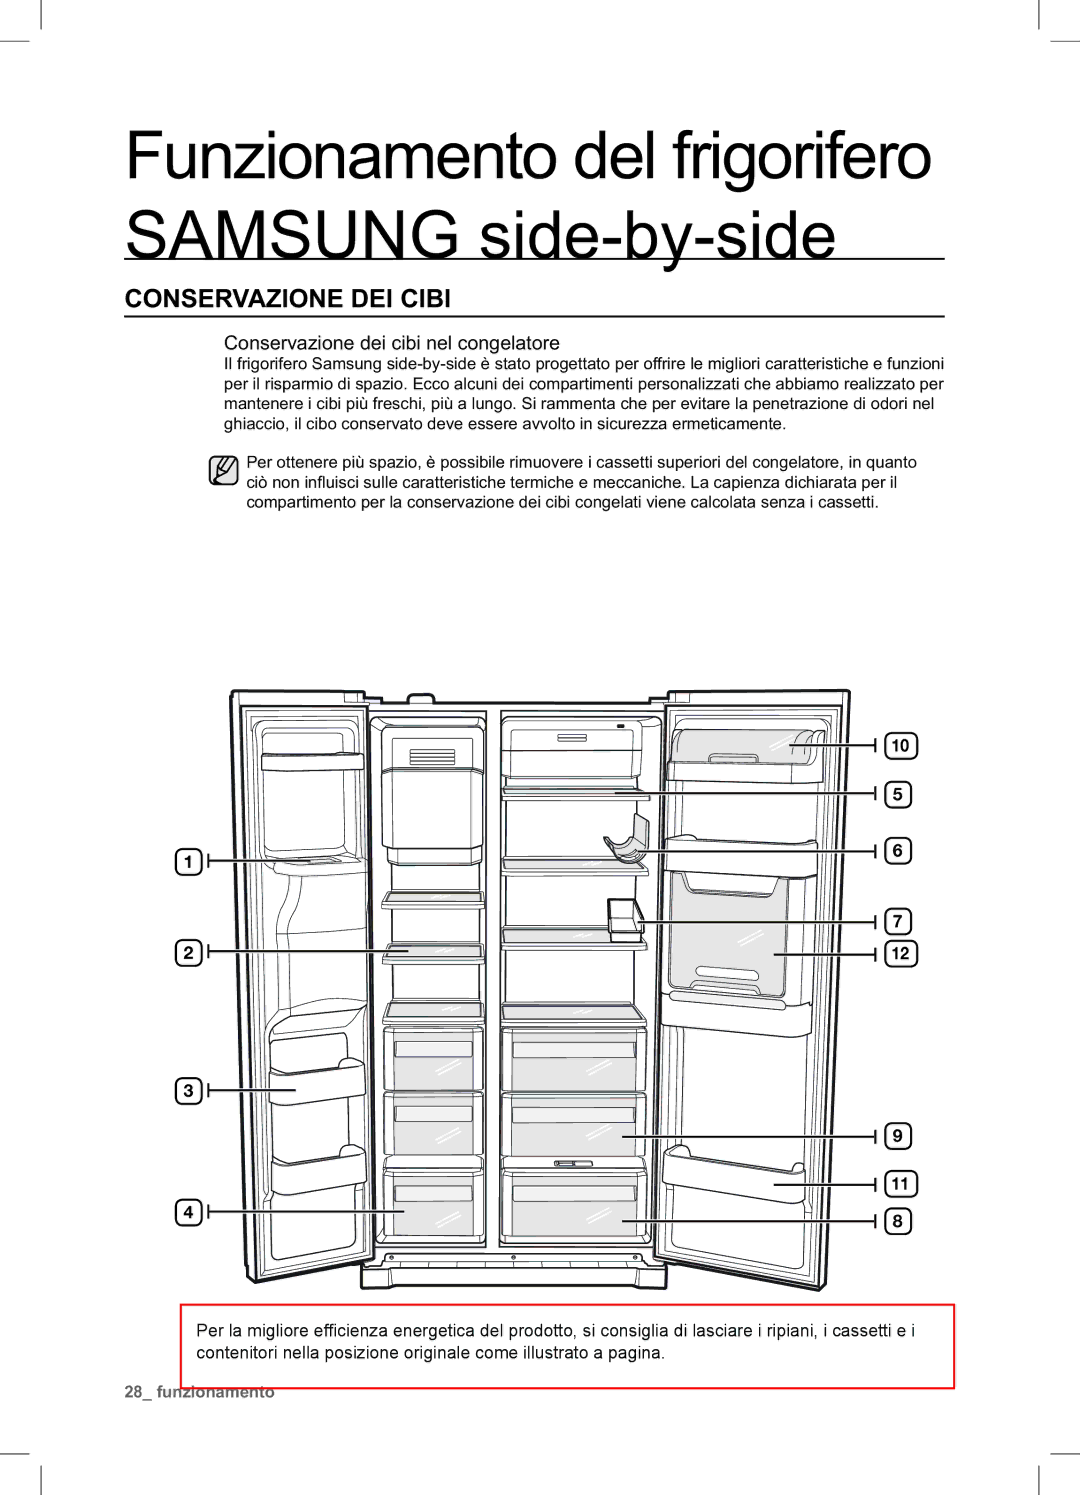 Samsung RSA1UTTS1/XES, RSA1ZTTS1/XES, RSA1STTS1/XES manual Conservazione DEI Cibi, Conservazione dei cibi nel congelatore 